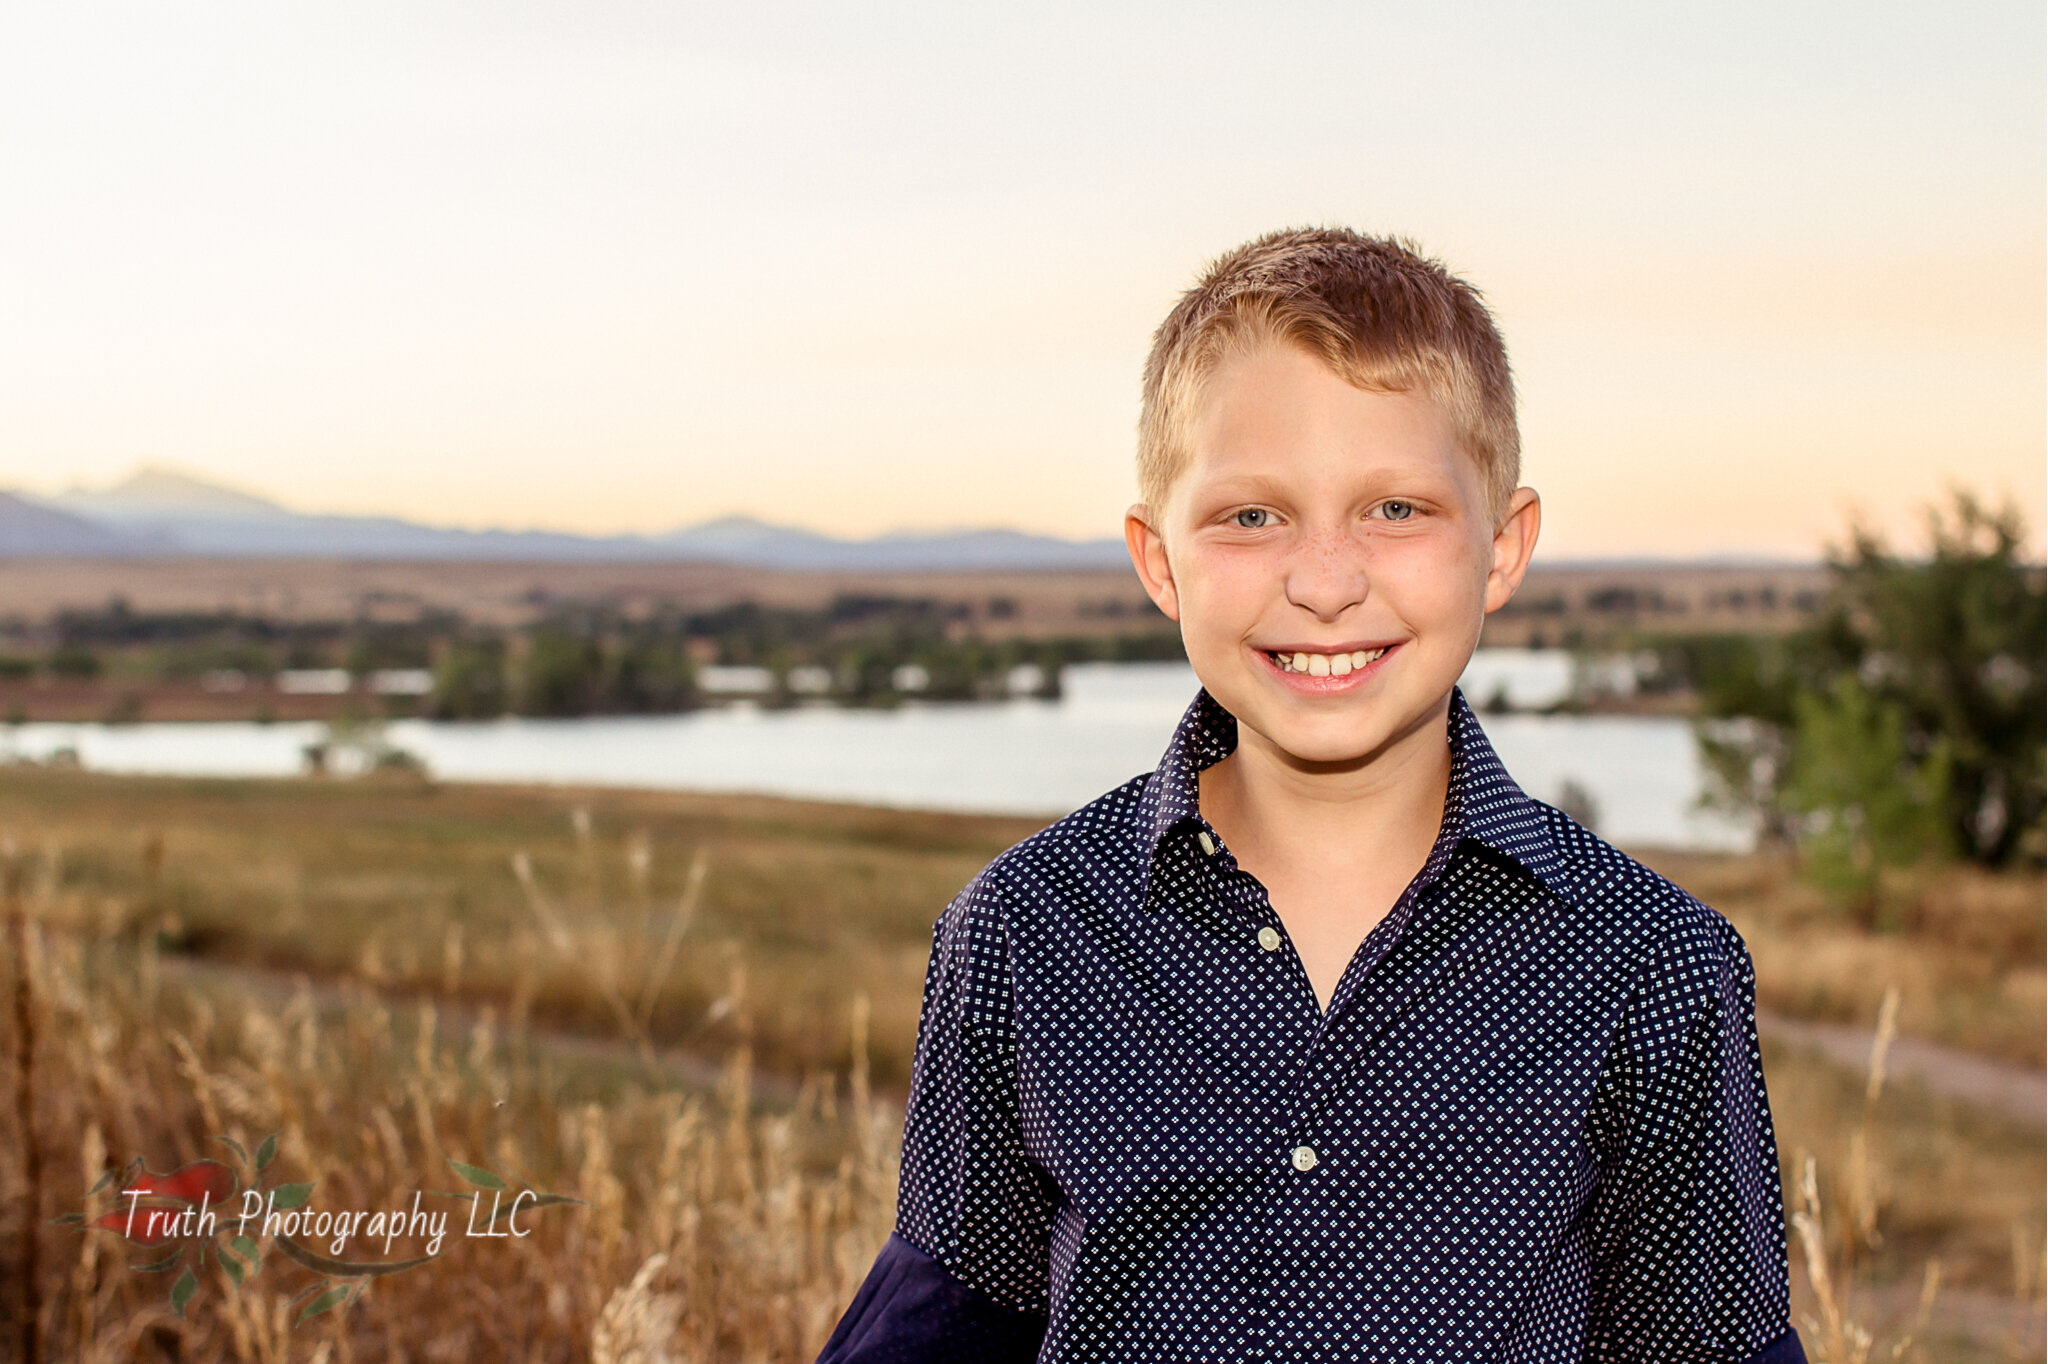 Kids photo shoot Denver Colorado